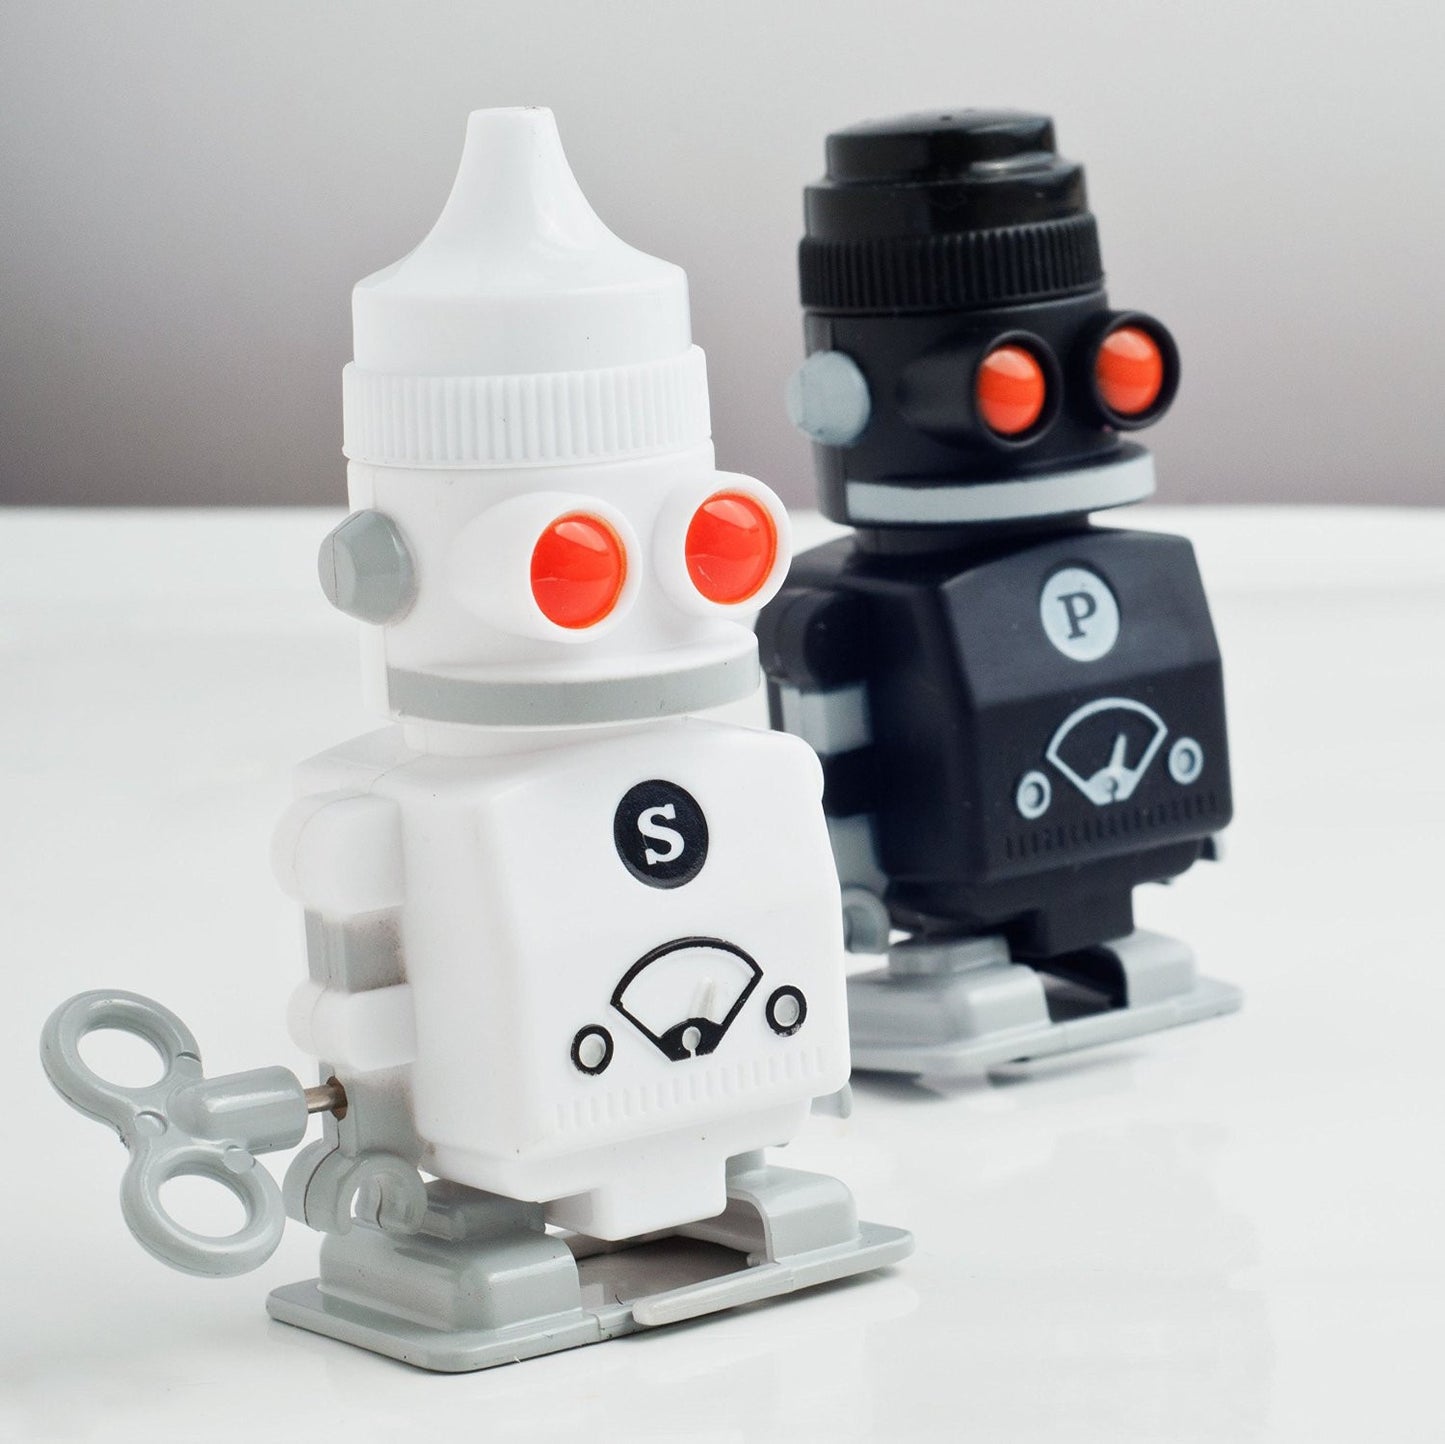 Robot Salt & Pepper Shakers - OddGifts.com